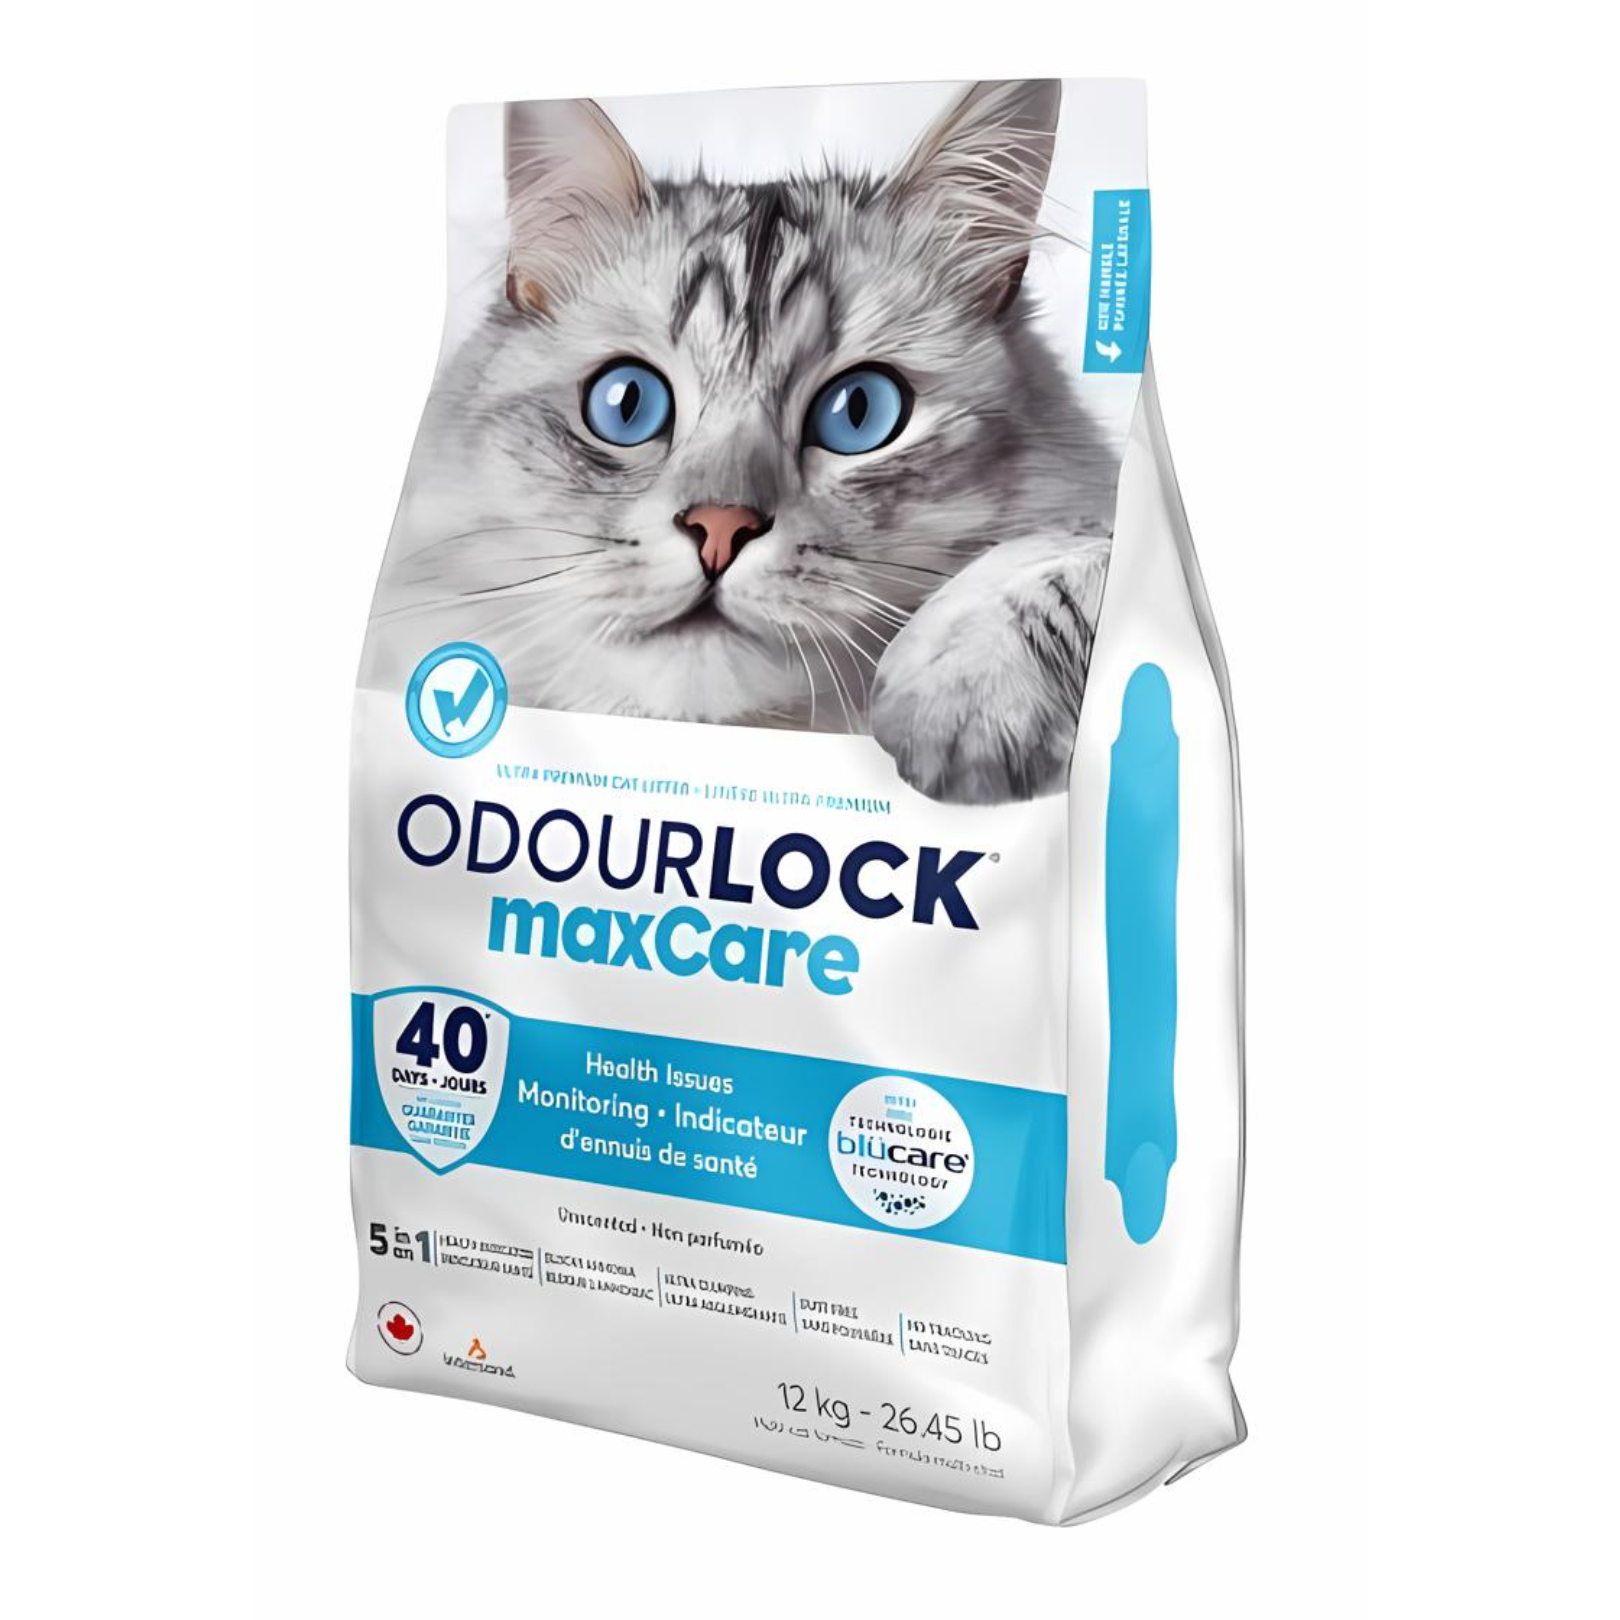 OdourLock maxCare Ultra Premium Clumping Cat Litter - 12kg